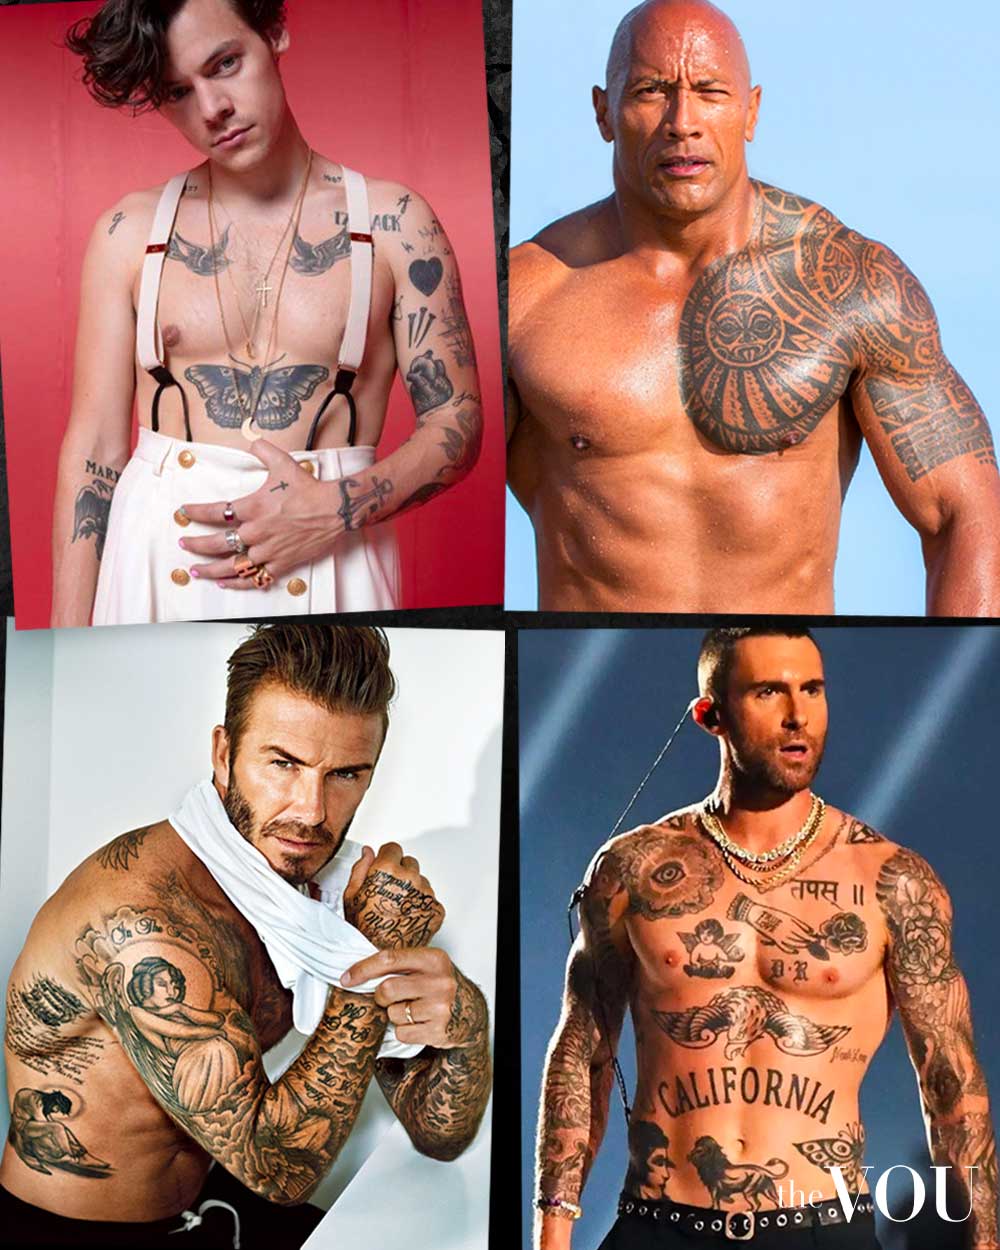 42 Attractive Cancer Ribbon Tattoos On Foot  Tattoo Designs   TattoosBagcom